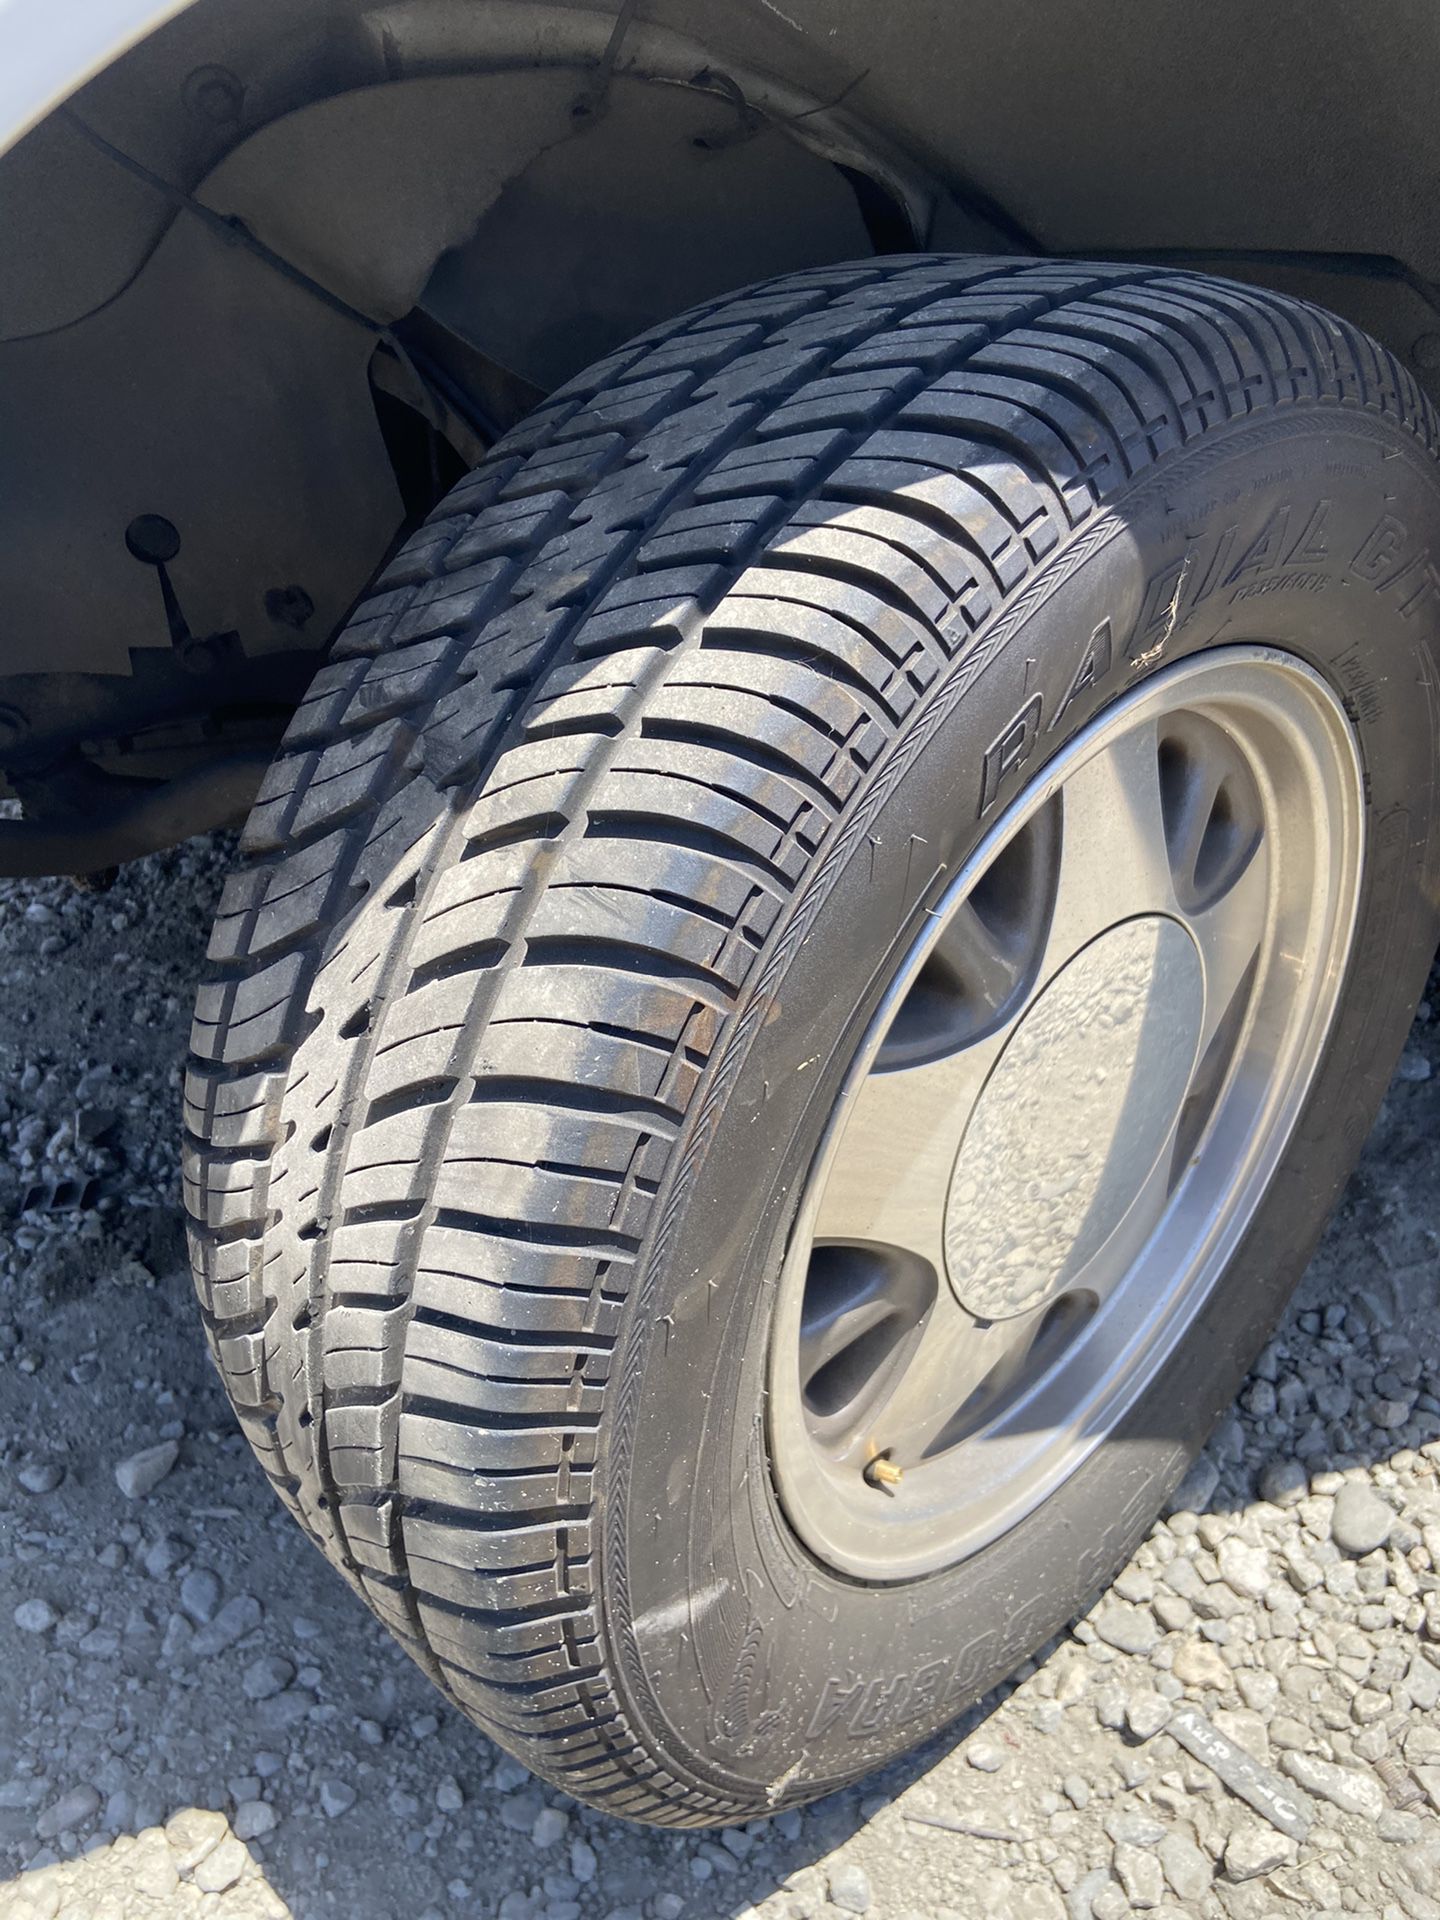 5 lug Chevy rims with brand new radial cobra tires c10 Silverado obs